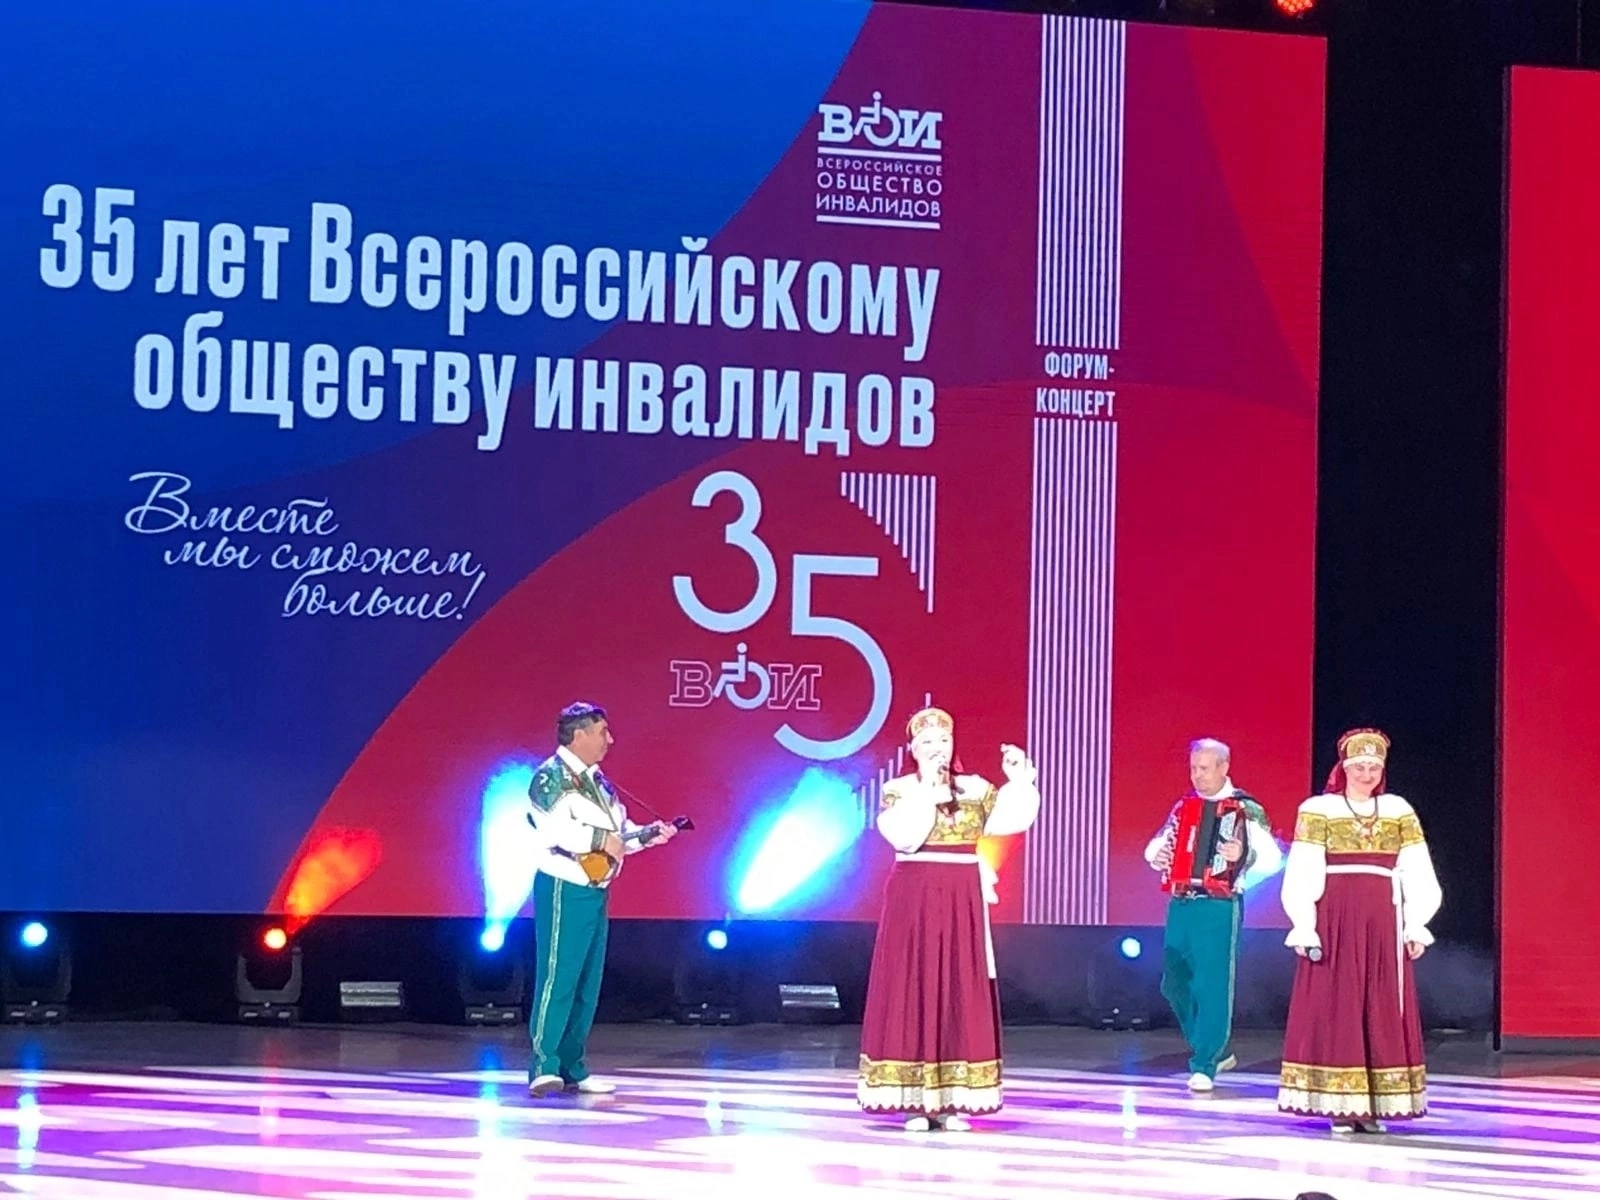 21 сентября – во Владимире отпраздновали 35 день рождения ВОИ.